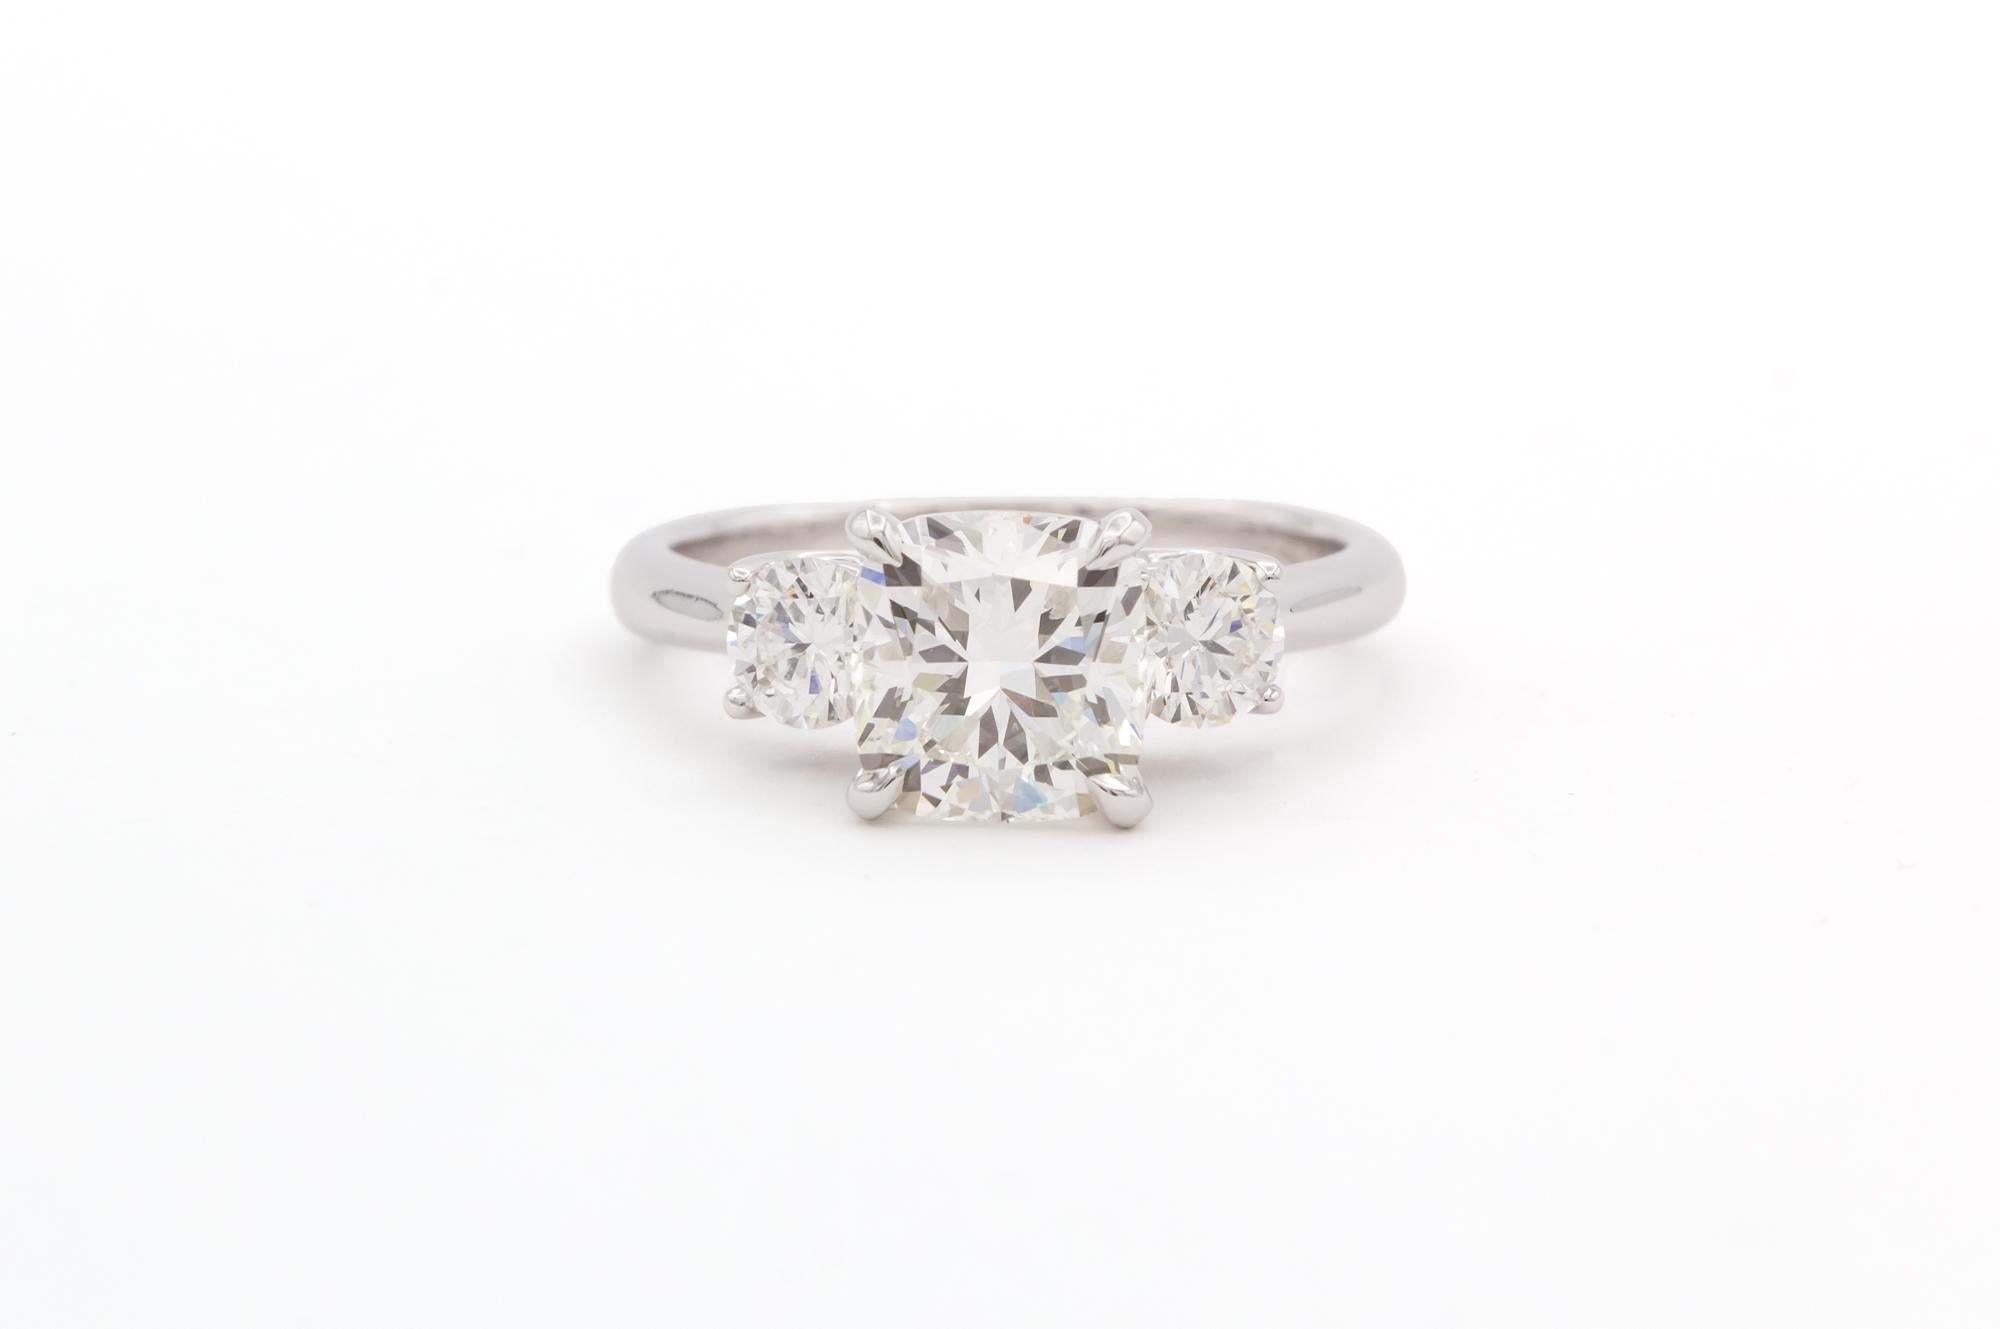 Wir freuen uns, diese GIA zertifiziert & Laser beschriftet 14k Weißgold & Diamant Drei Stein Verlobungsring anzubieten. Dieser wunderschöne Ring besteht aus einem GIA-zertifizierten Diamanten im Kissenschliff mit einem Gewicht von 2,04ct I/SI1, der